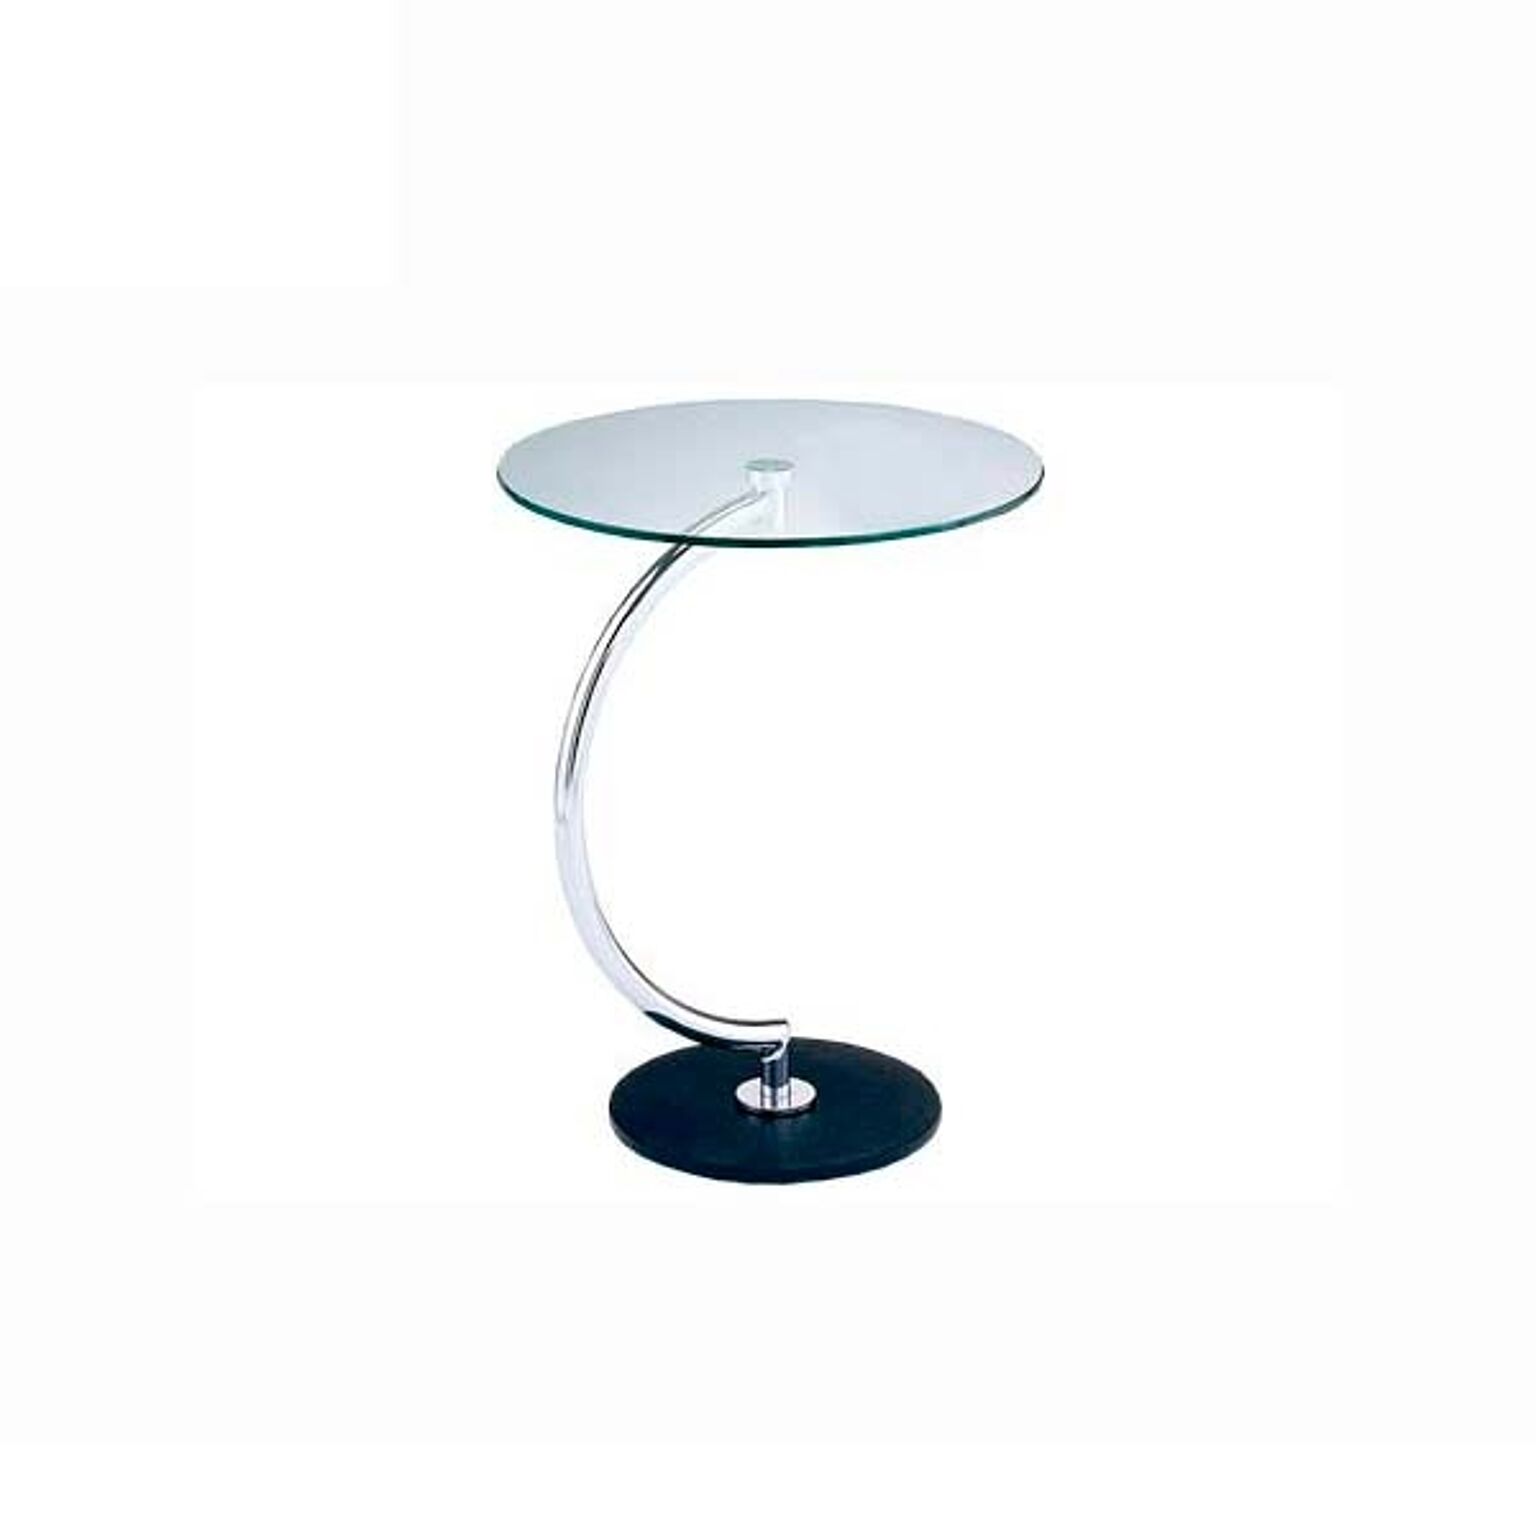 あずま工芸 円形サイドテーブル LLT8514 強化ガラス天板 スチールクロームメッキ ナチュラルブラス